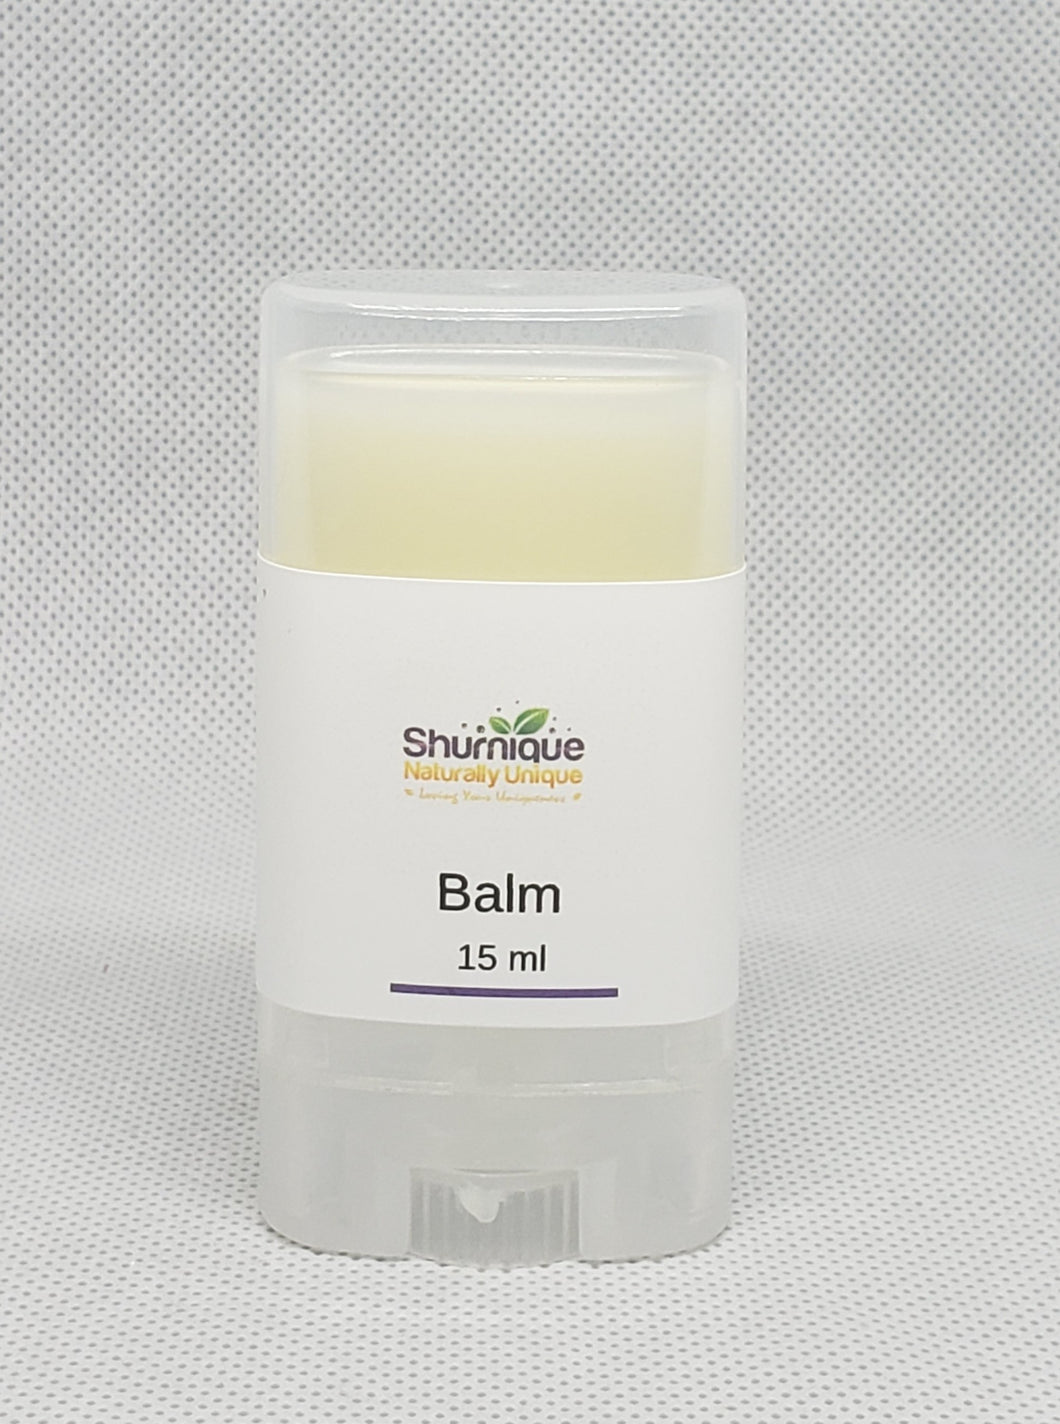 Body Balm - Shurnique-Naturally Unique, lotion stick